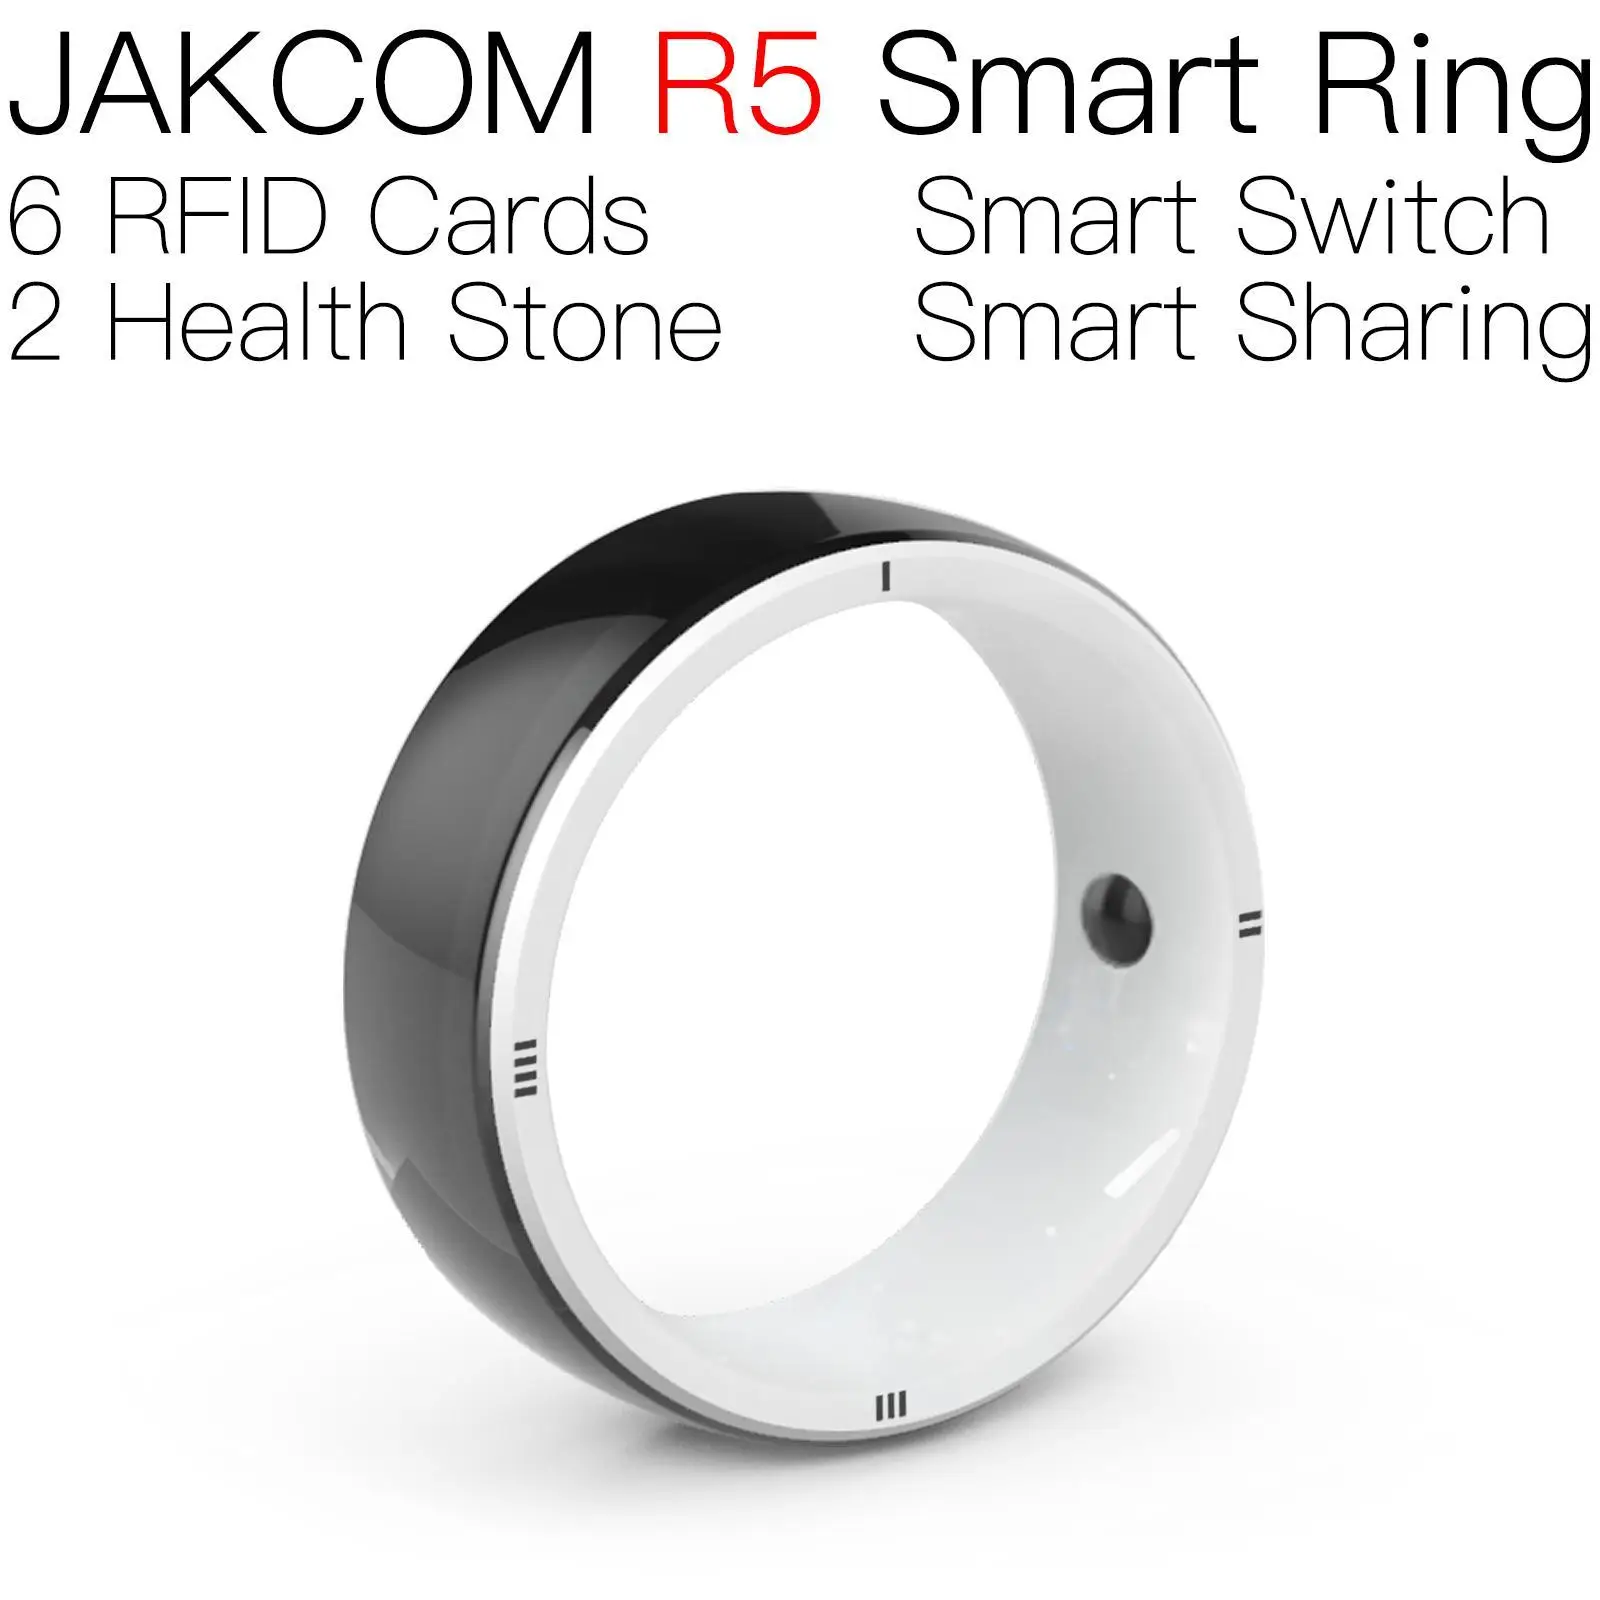 

Смарт-кольцо JAKCOM R5, супер значение, чем микрочип, uhf активные rfid наклейки на малины, стирка, этикетка amibo, смеситель, клон